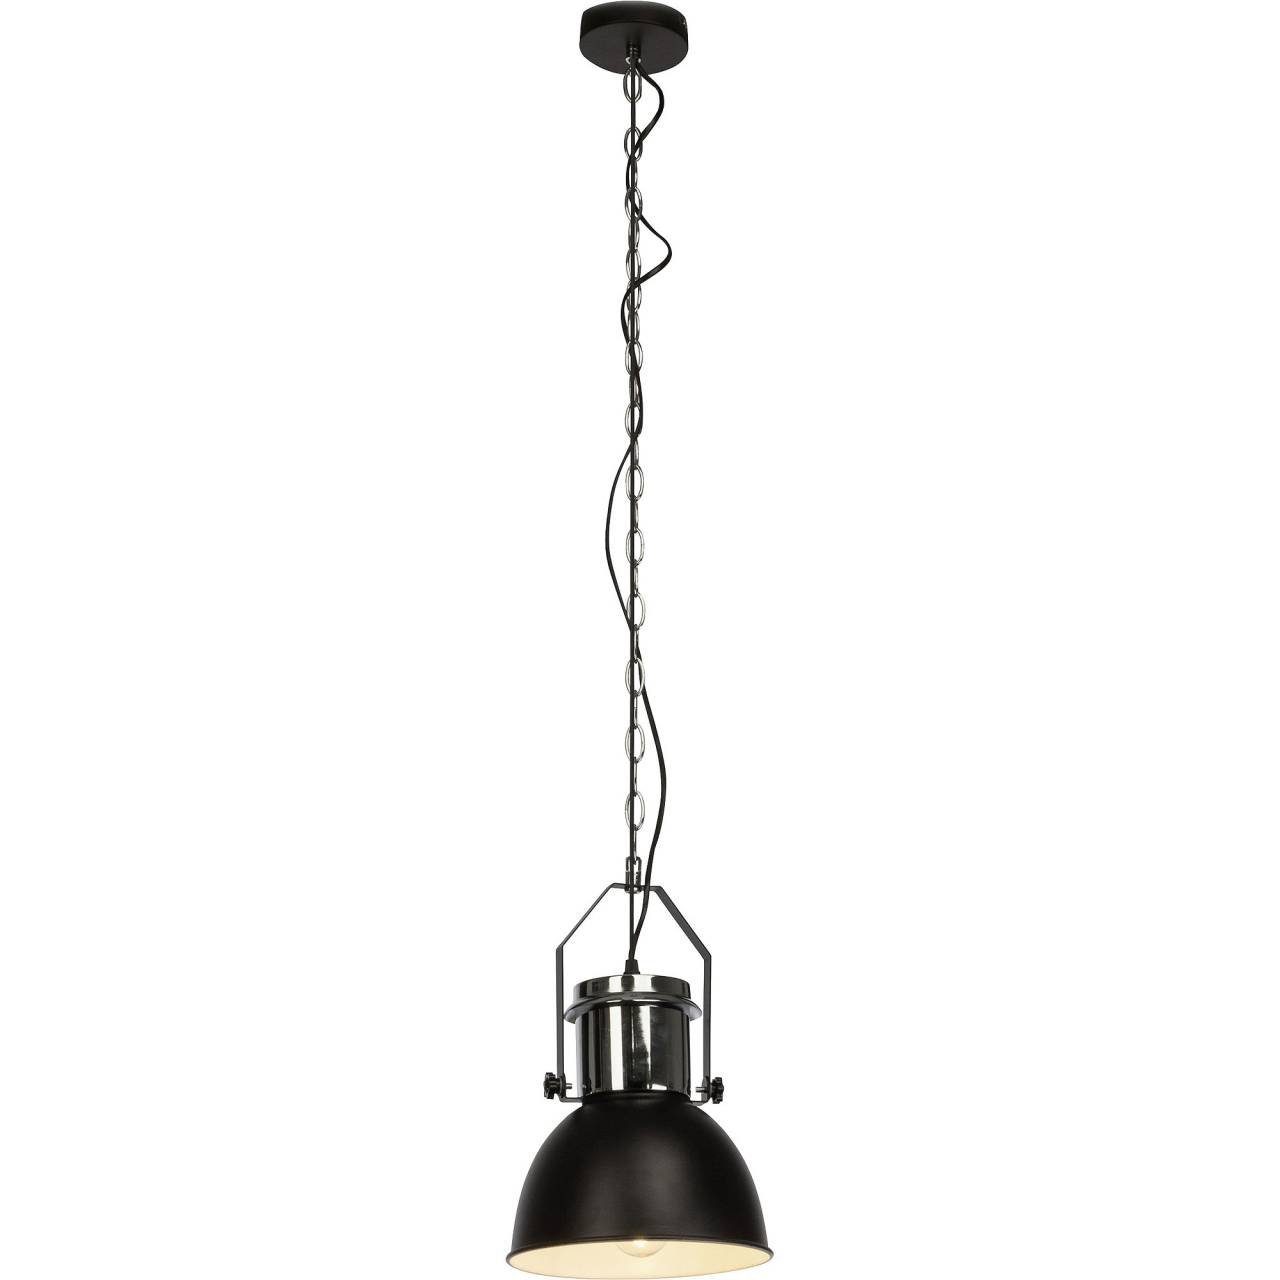 Brilliant Pendelleuchte Salford, gee schwarz/chrom 23cm 60W, A60, Pendelleuchte Lampe Salford 1x E27